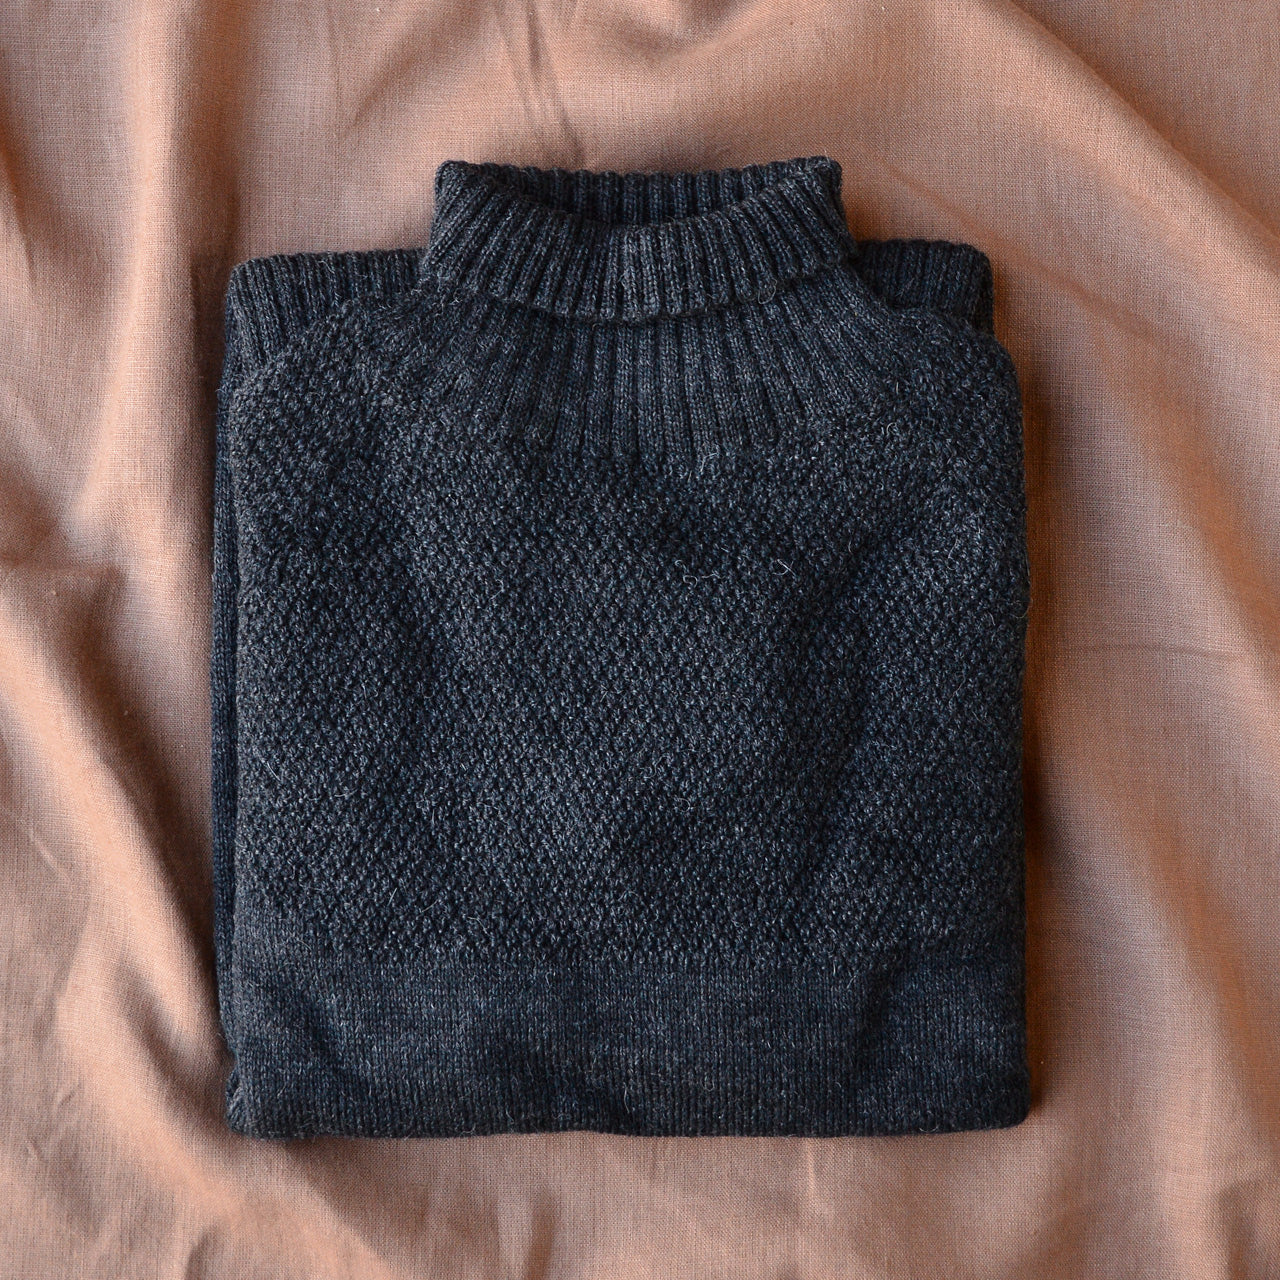 Sailor Sweater - Alpaca/Merino - Onyx (Adults S, M, L)